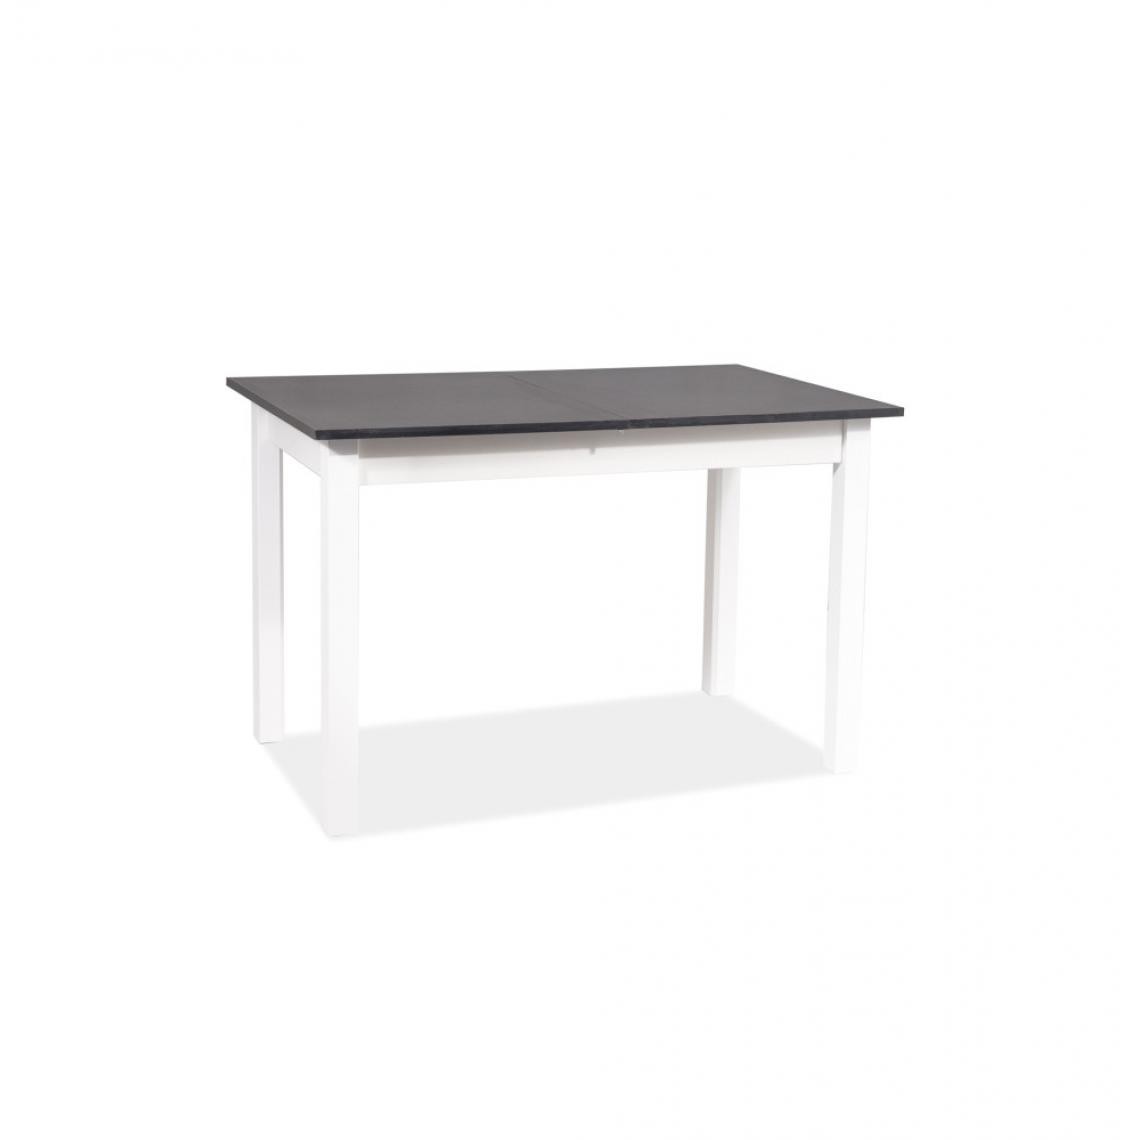 Ac-Deco - Table extensible - Horacy - L 60 x l 140 x H 75 cm - Anthracite et blanc - Tables à manger